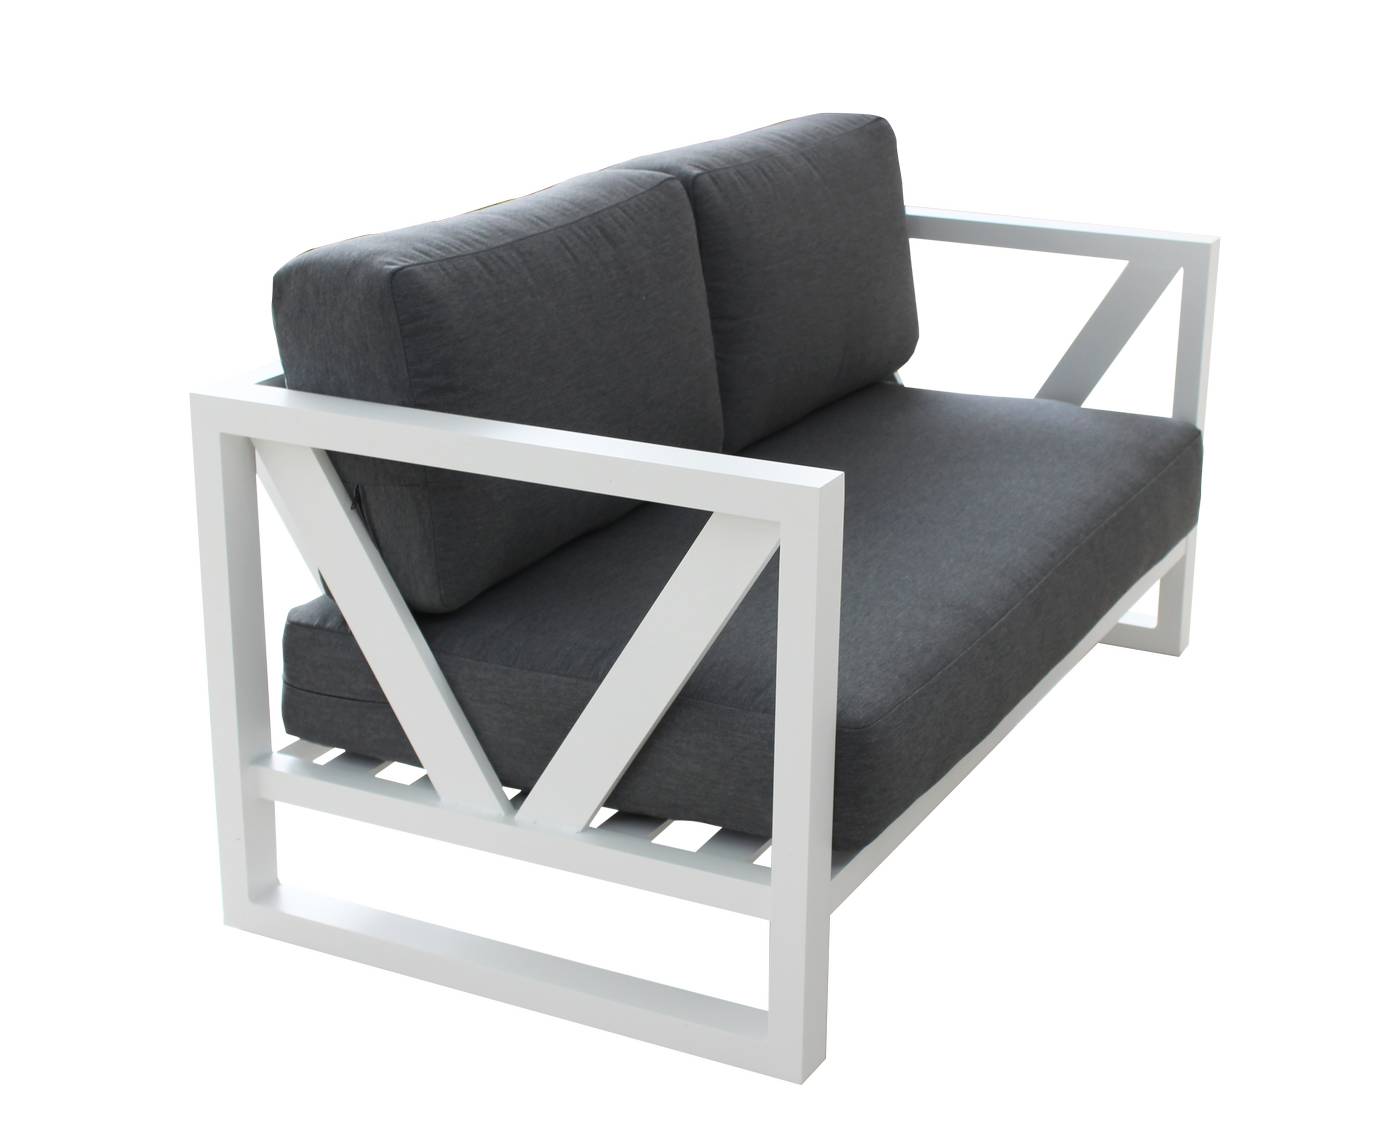 Set Aluminio Luxe Ventus-9 - Lujoso conjunto de aluminio: sofá 2 plazas + 2 sillones + mesa de centro + 2 taburetes. Color conjunto: blanco, antracita o champagne.